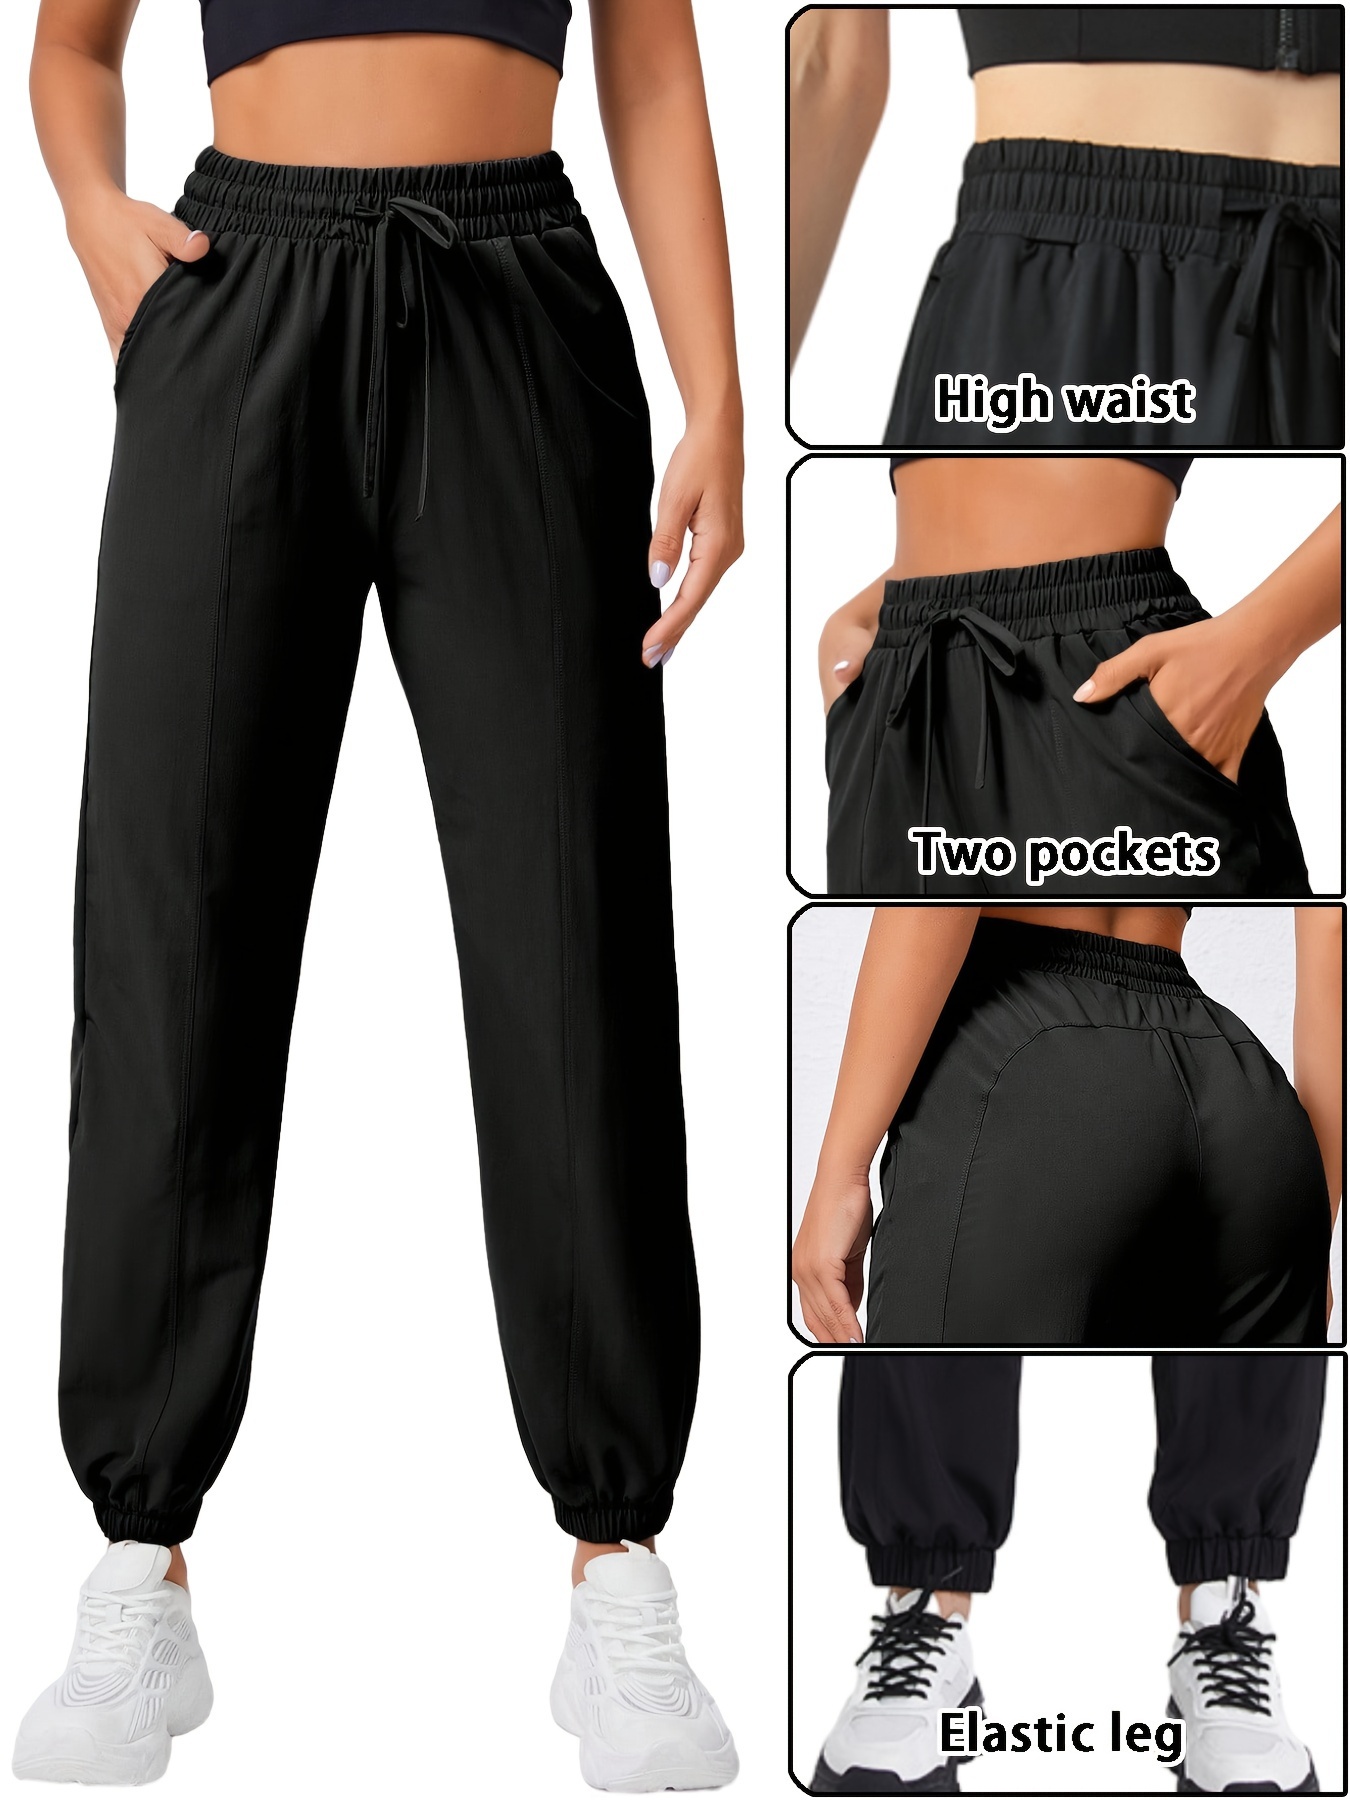 Pantalones deportivos para mujeres, Comprar online